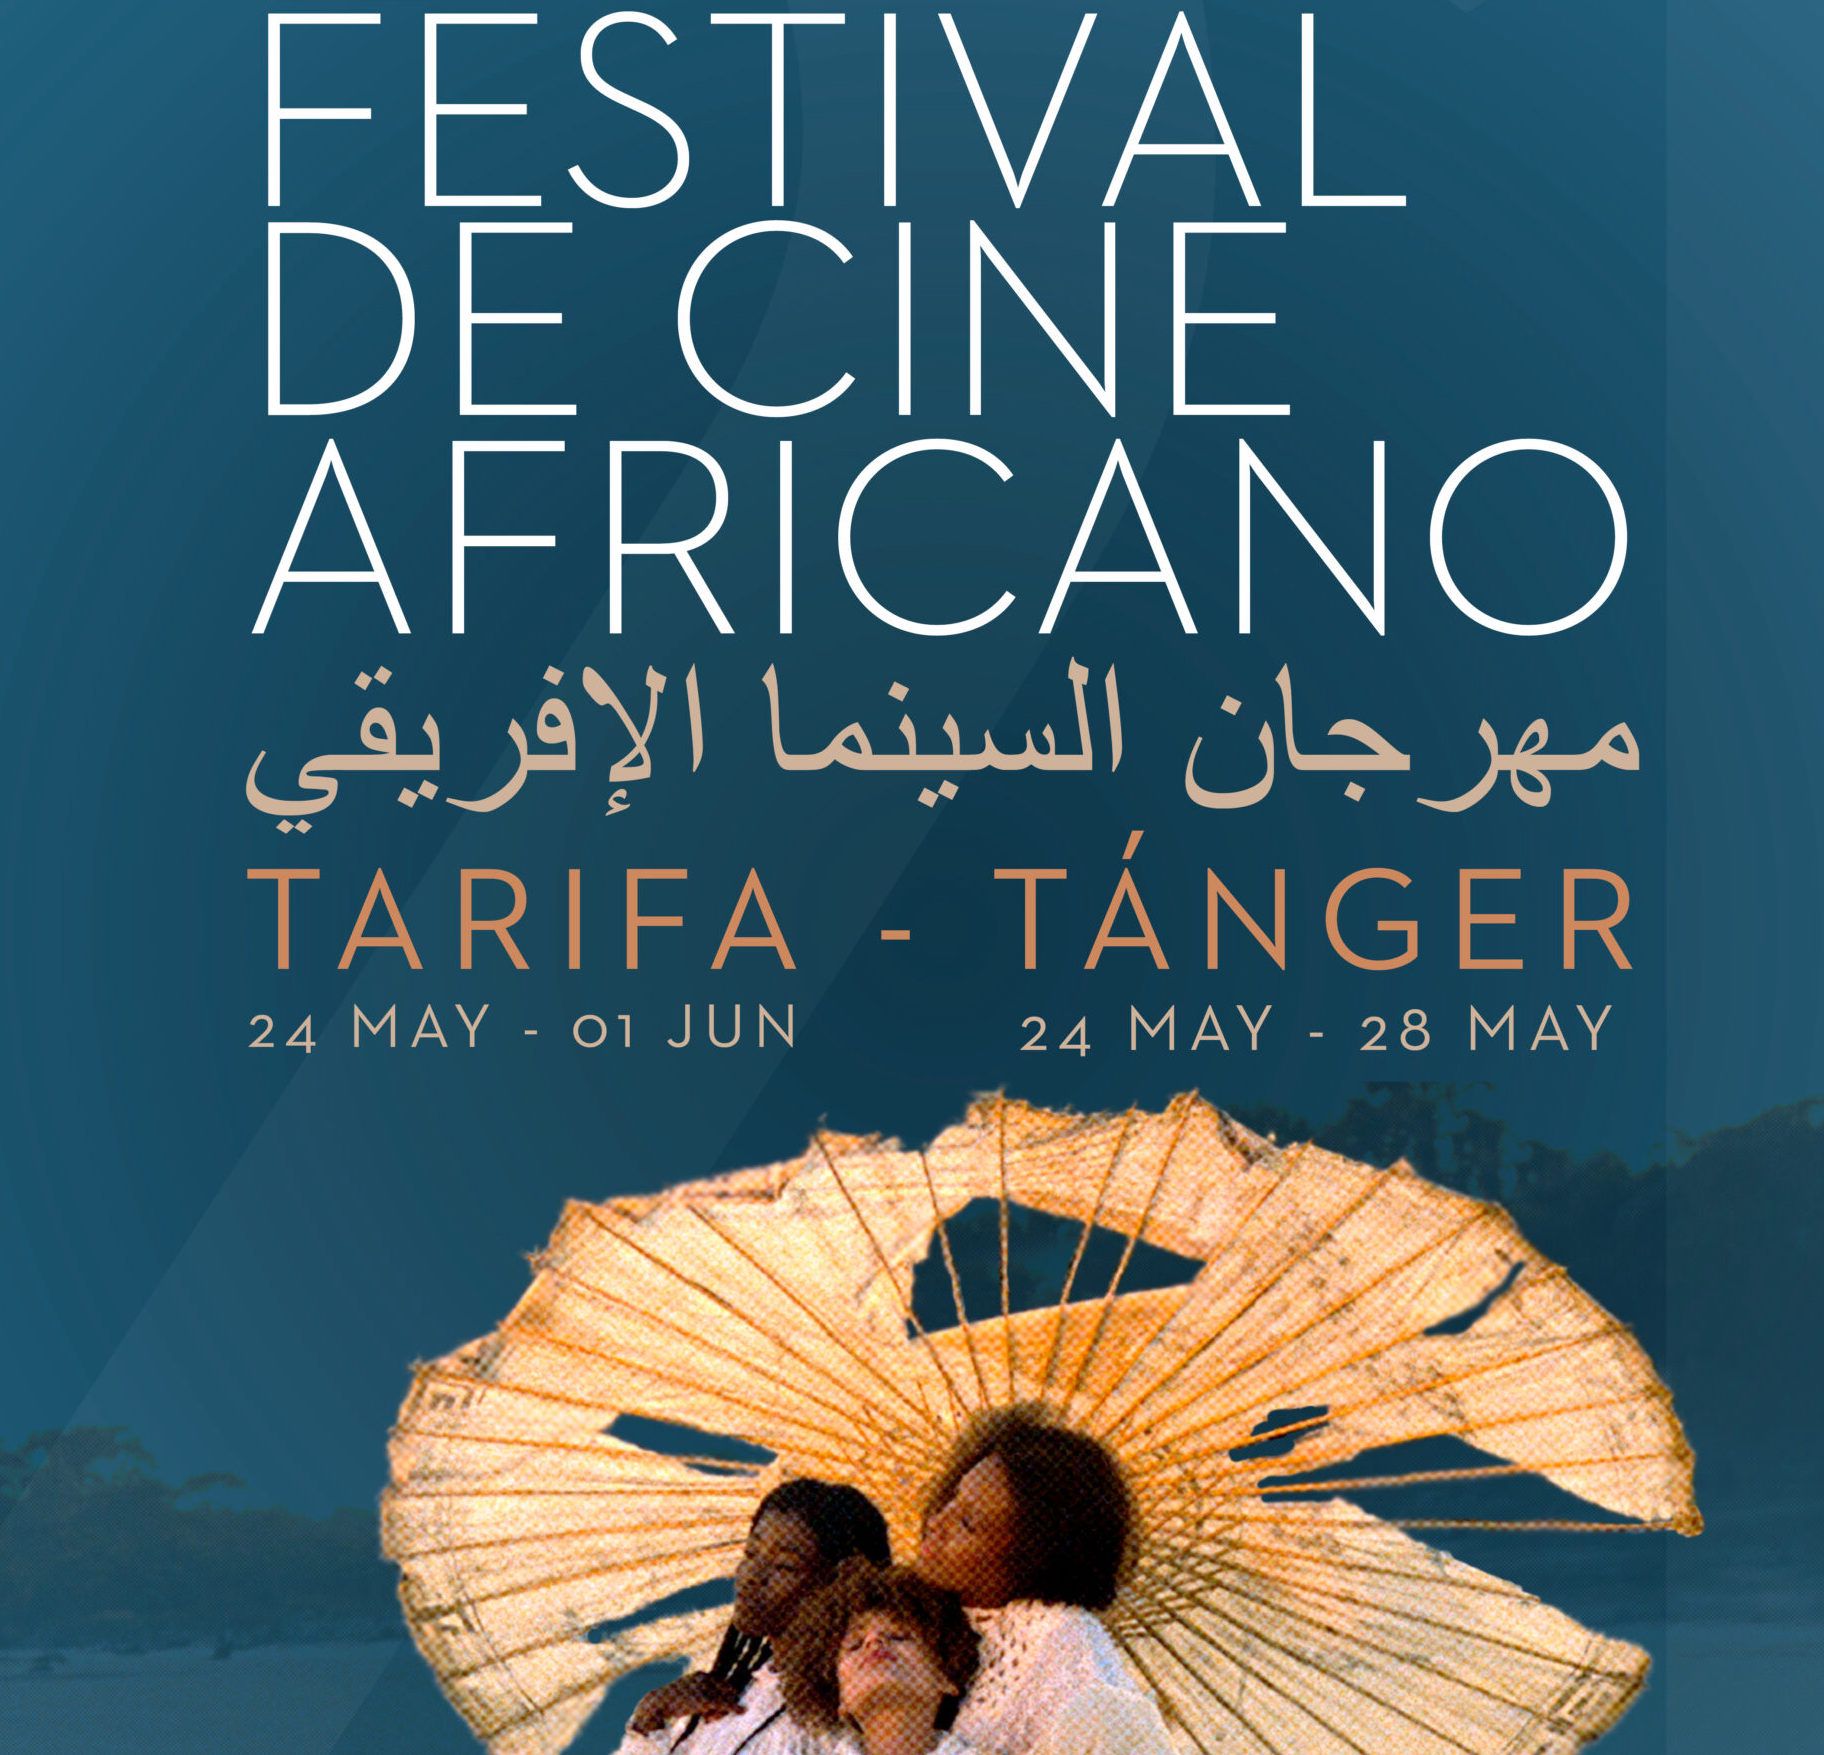 El cine hecho por mujeres y los afrofeminismos marcarán la 21º edición del Festival de Cine Africano.